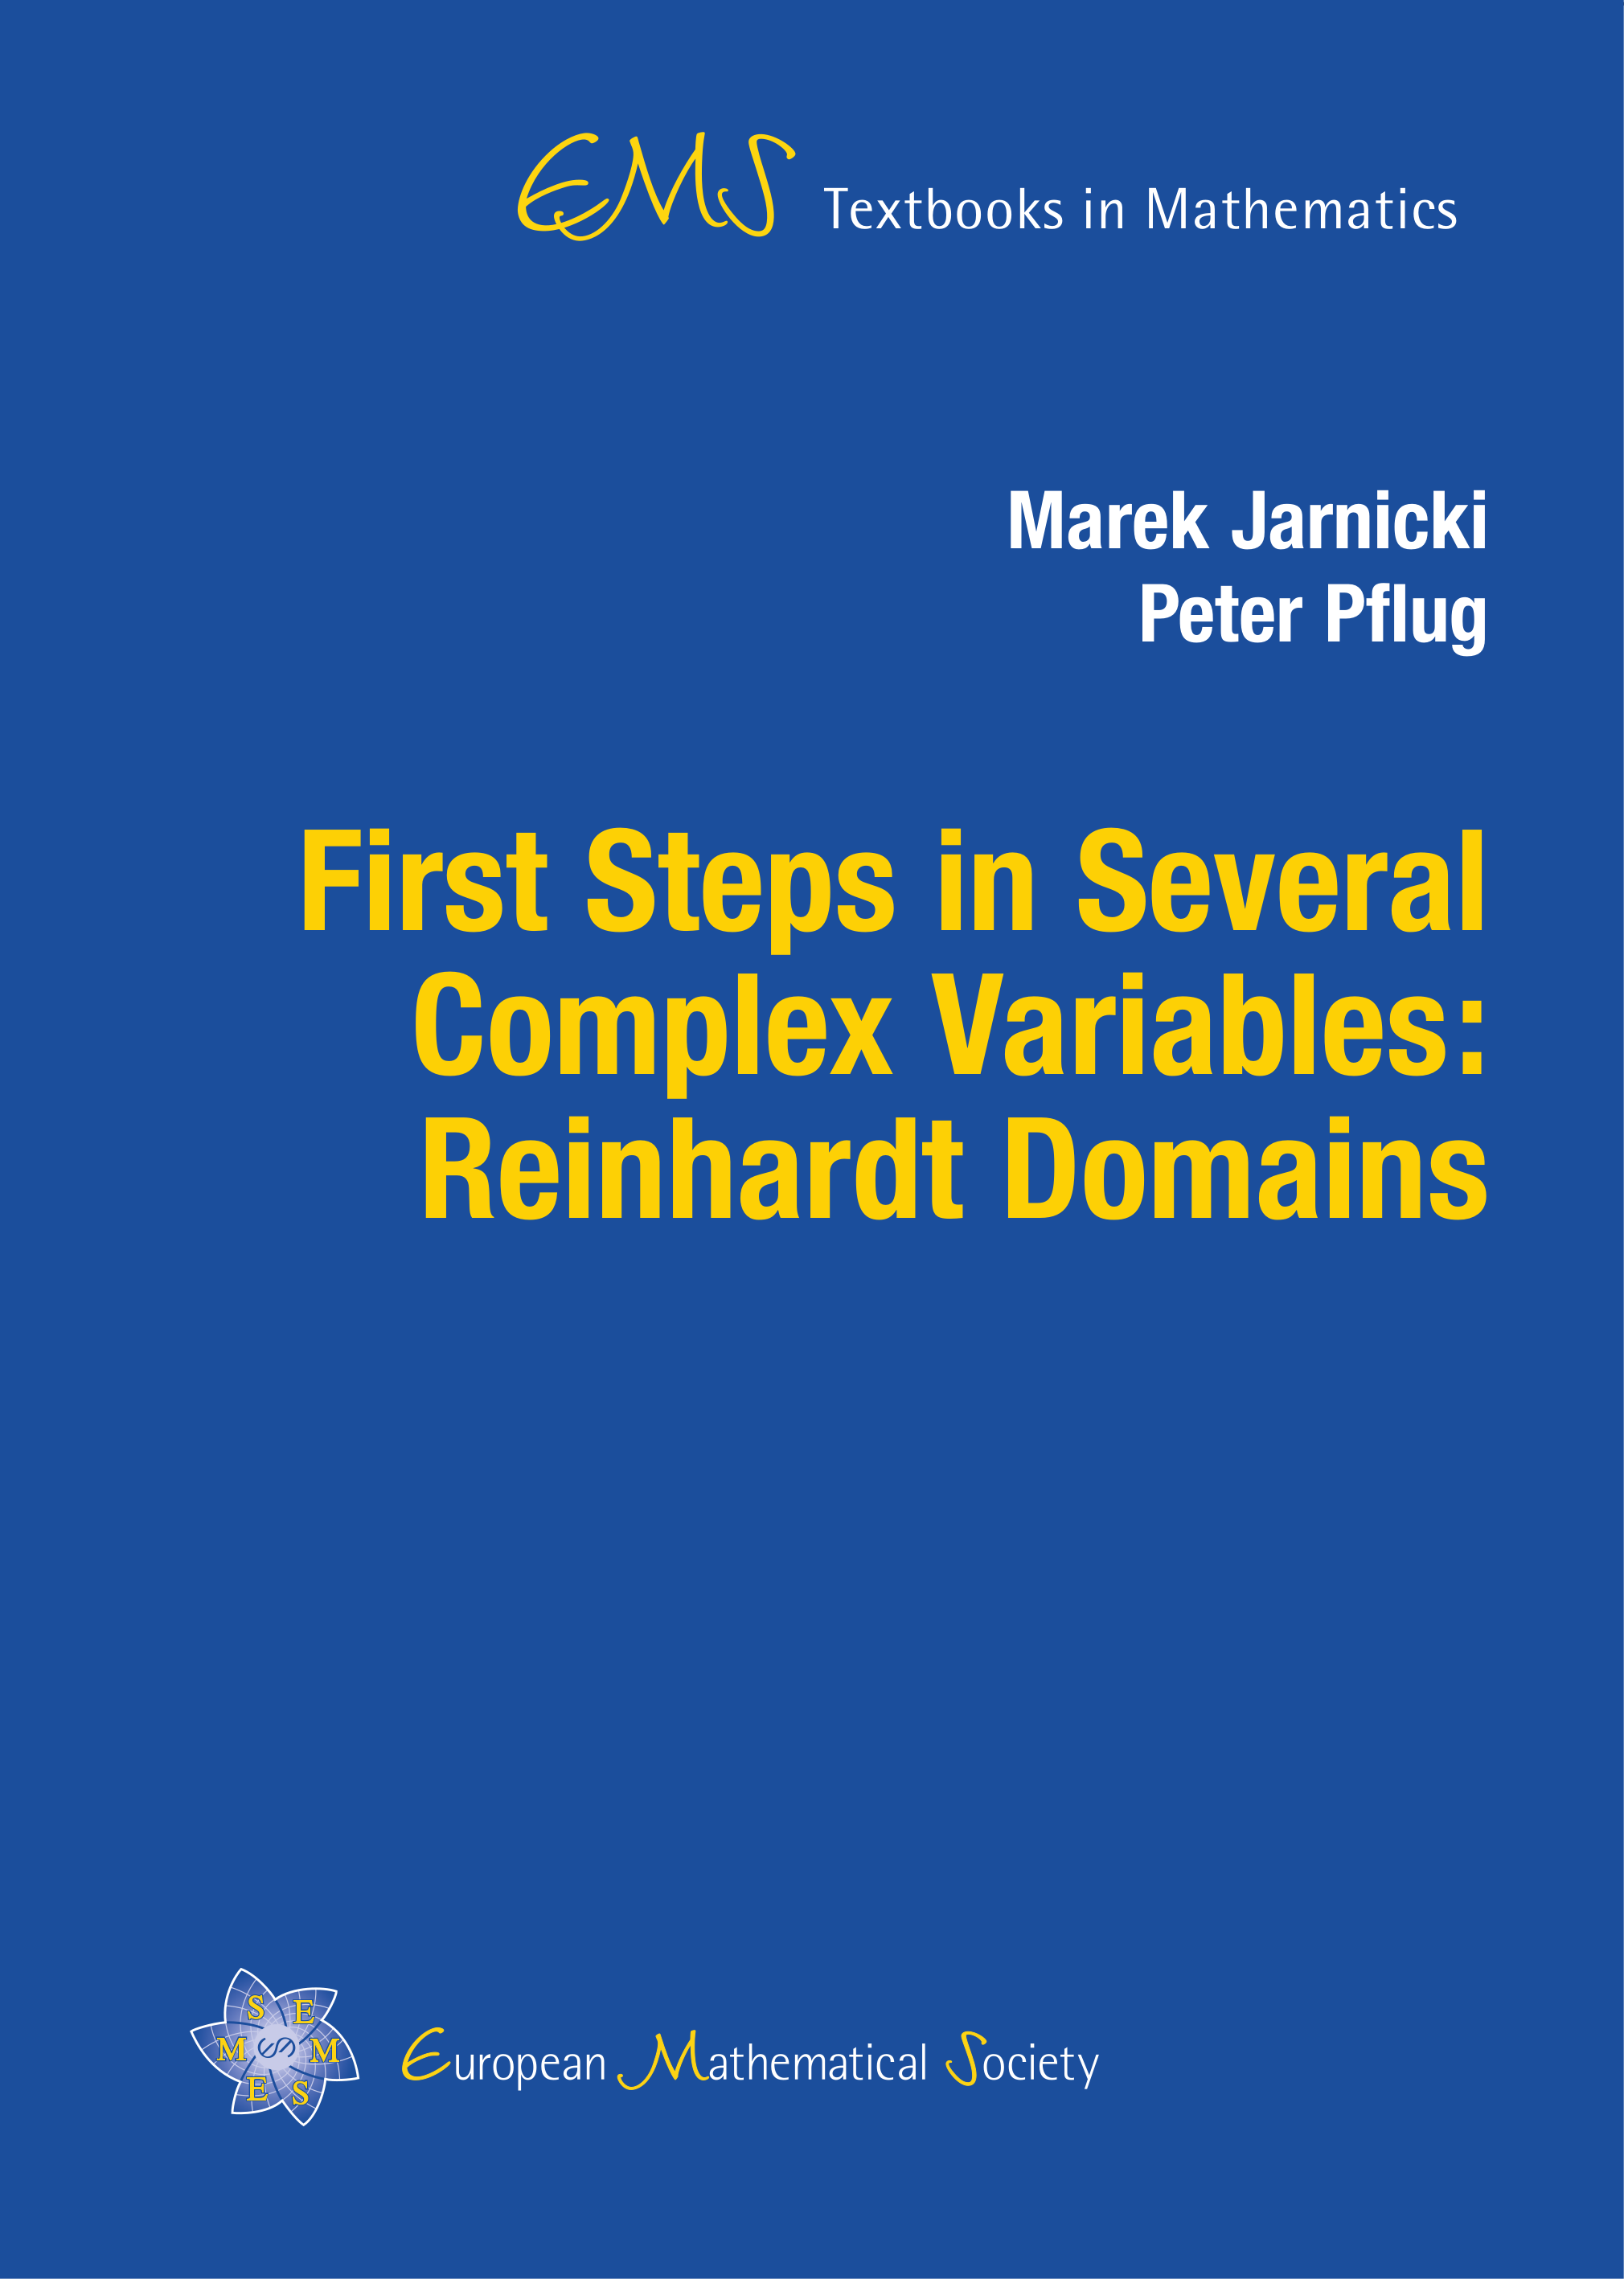 Reinhardt domains cover